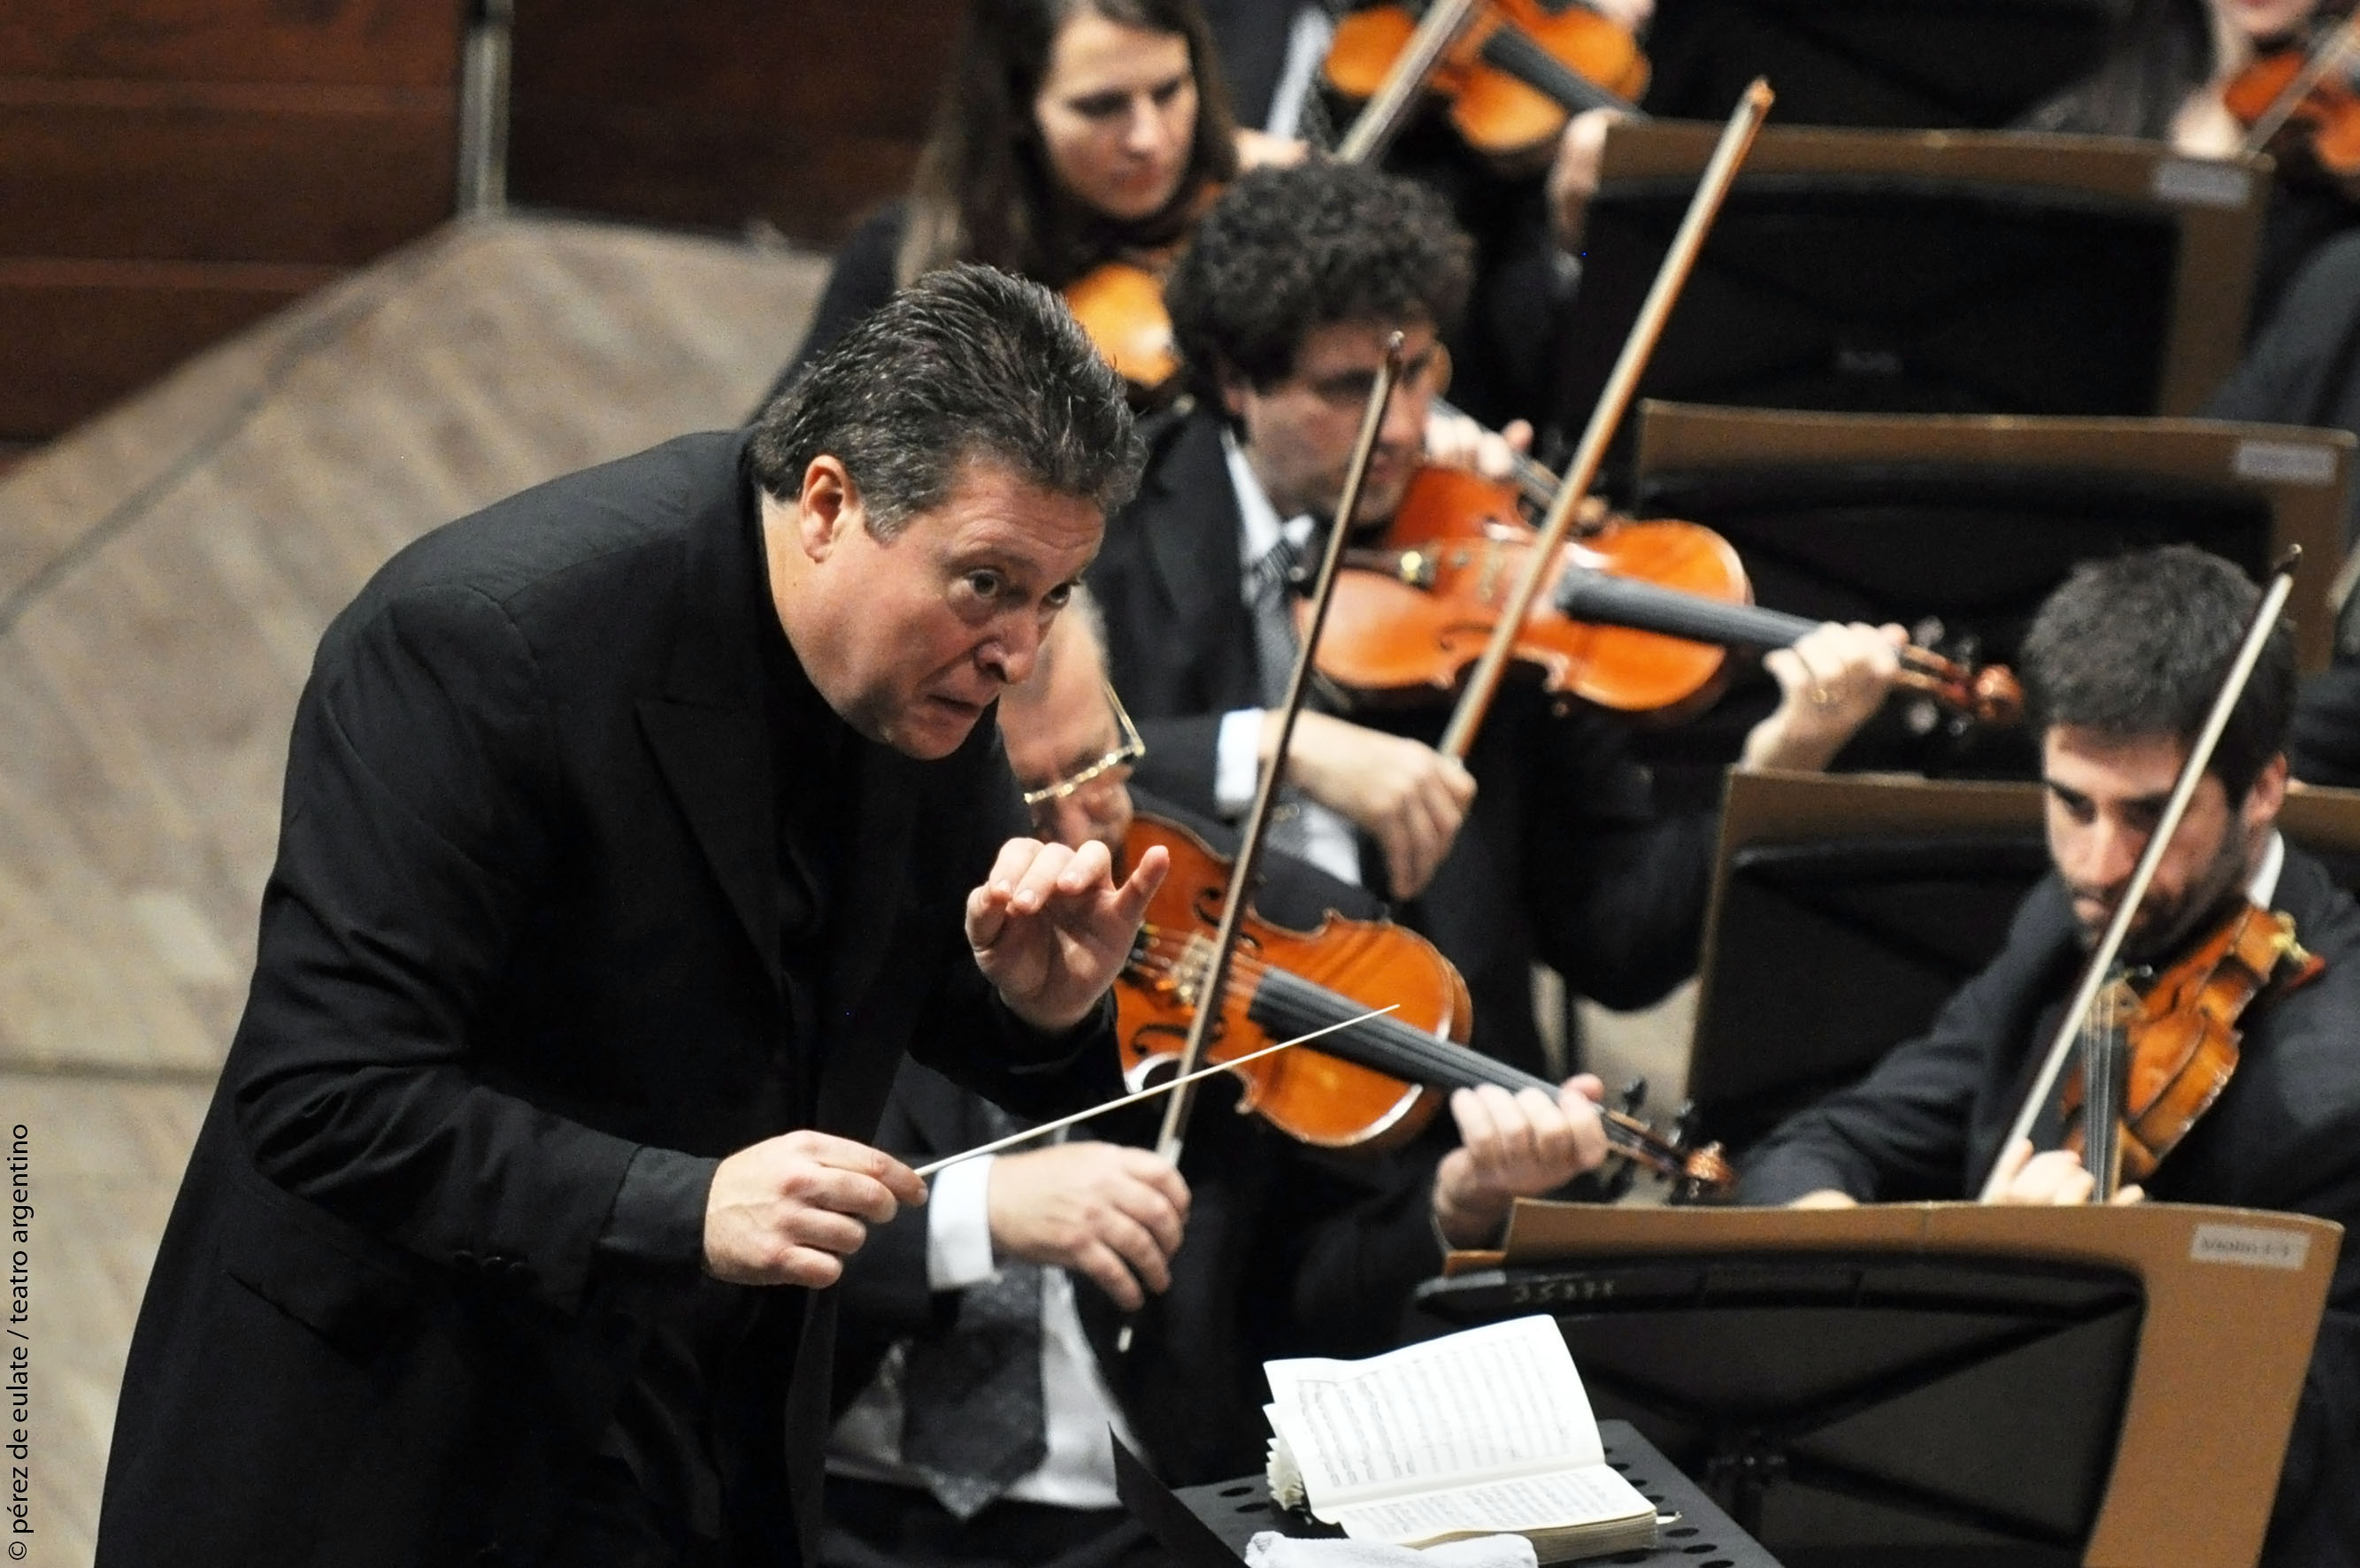 Carlos Vieu conducting